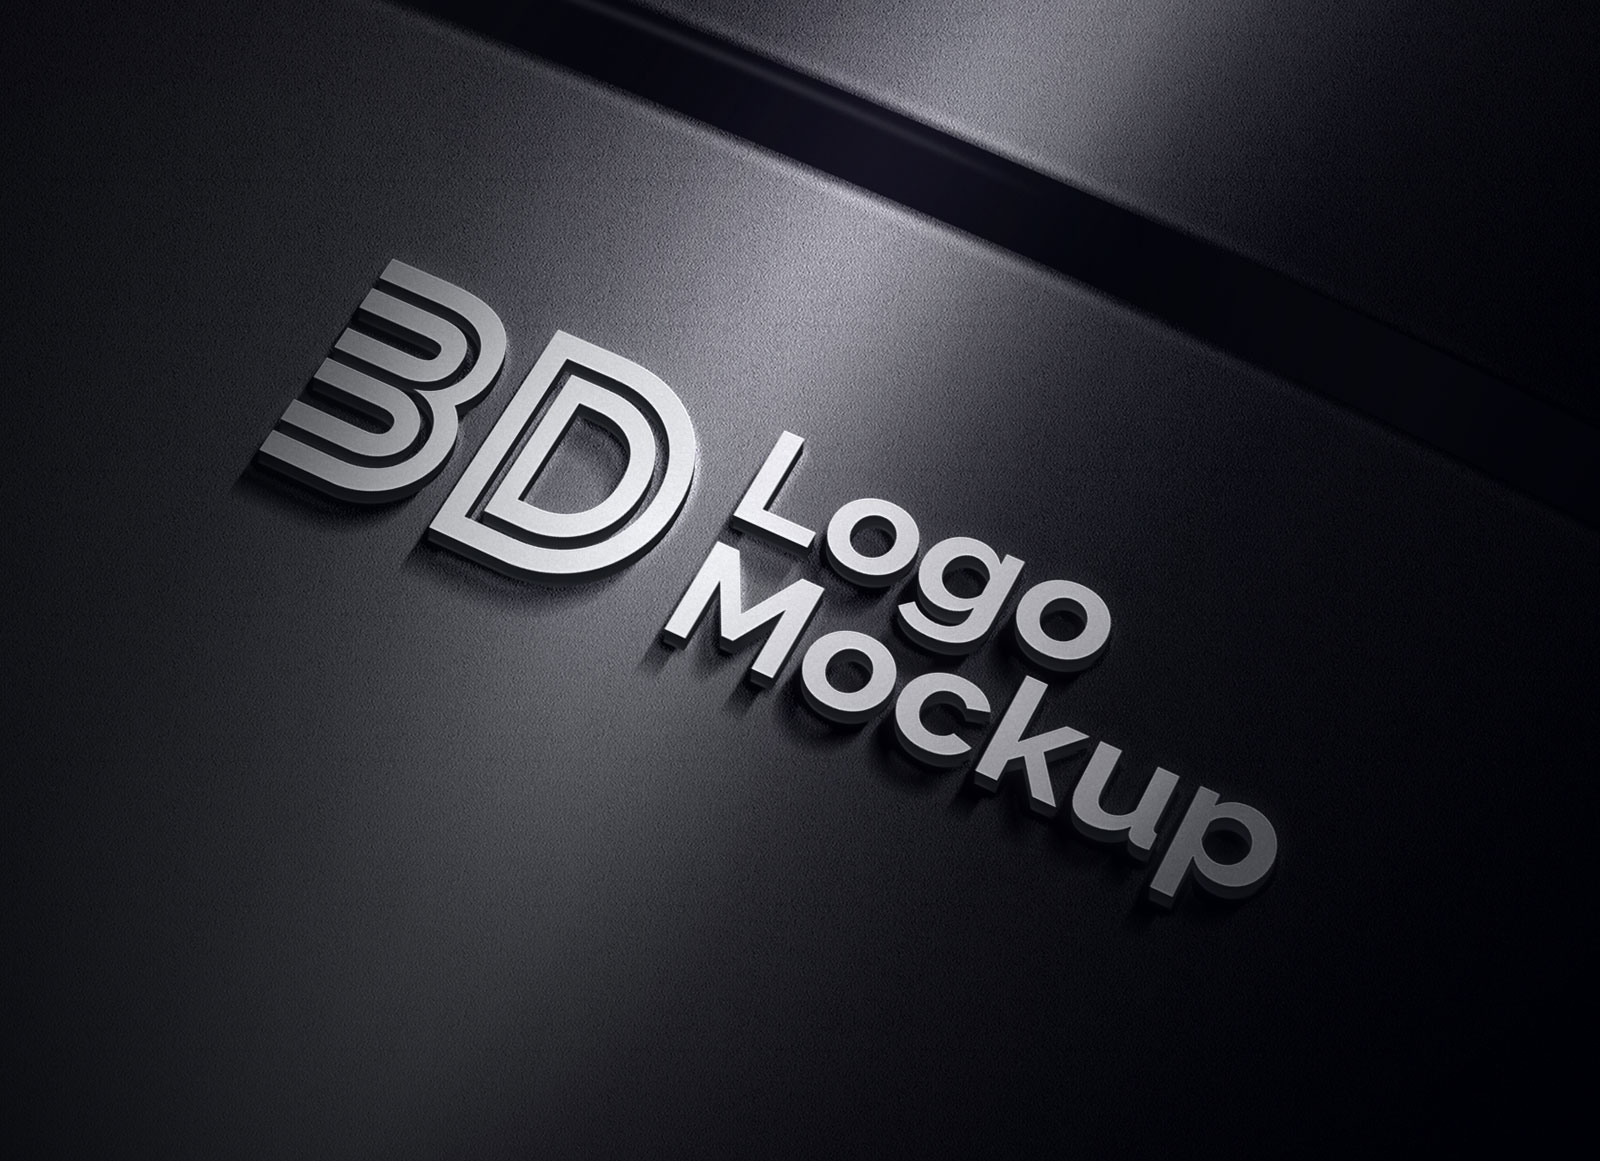 Premium 3D logo Mockup PSD Free Download